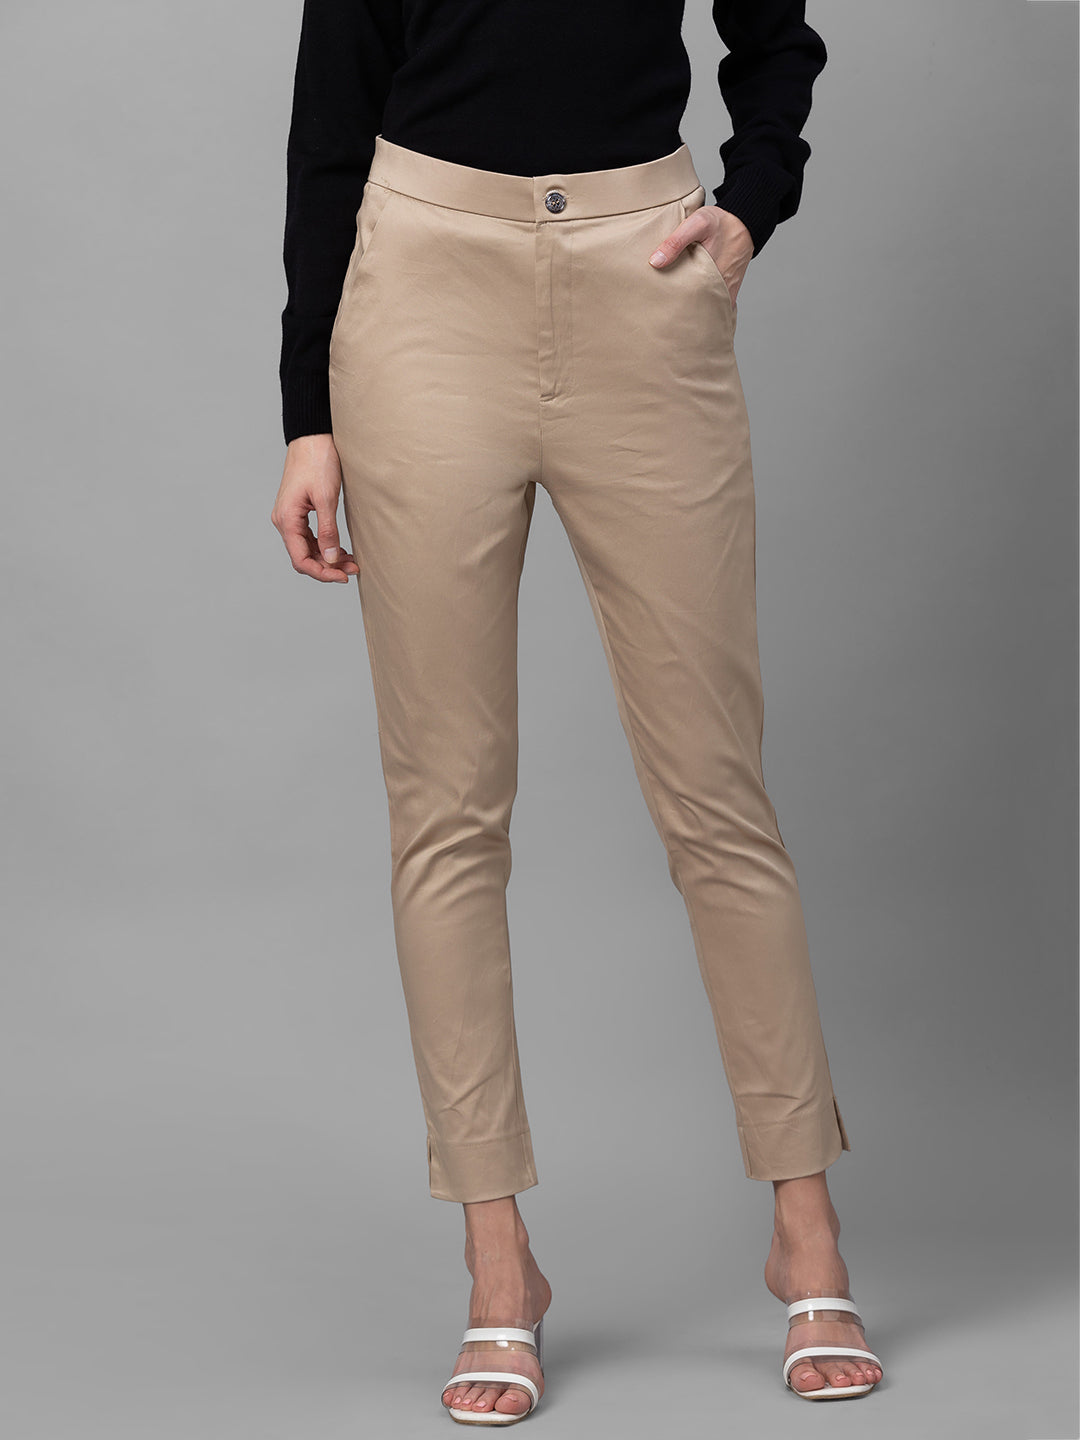 Globus Beige Solid Slim Fit Regular Trousers